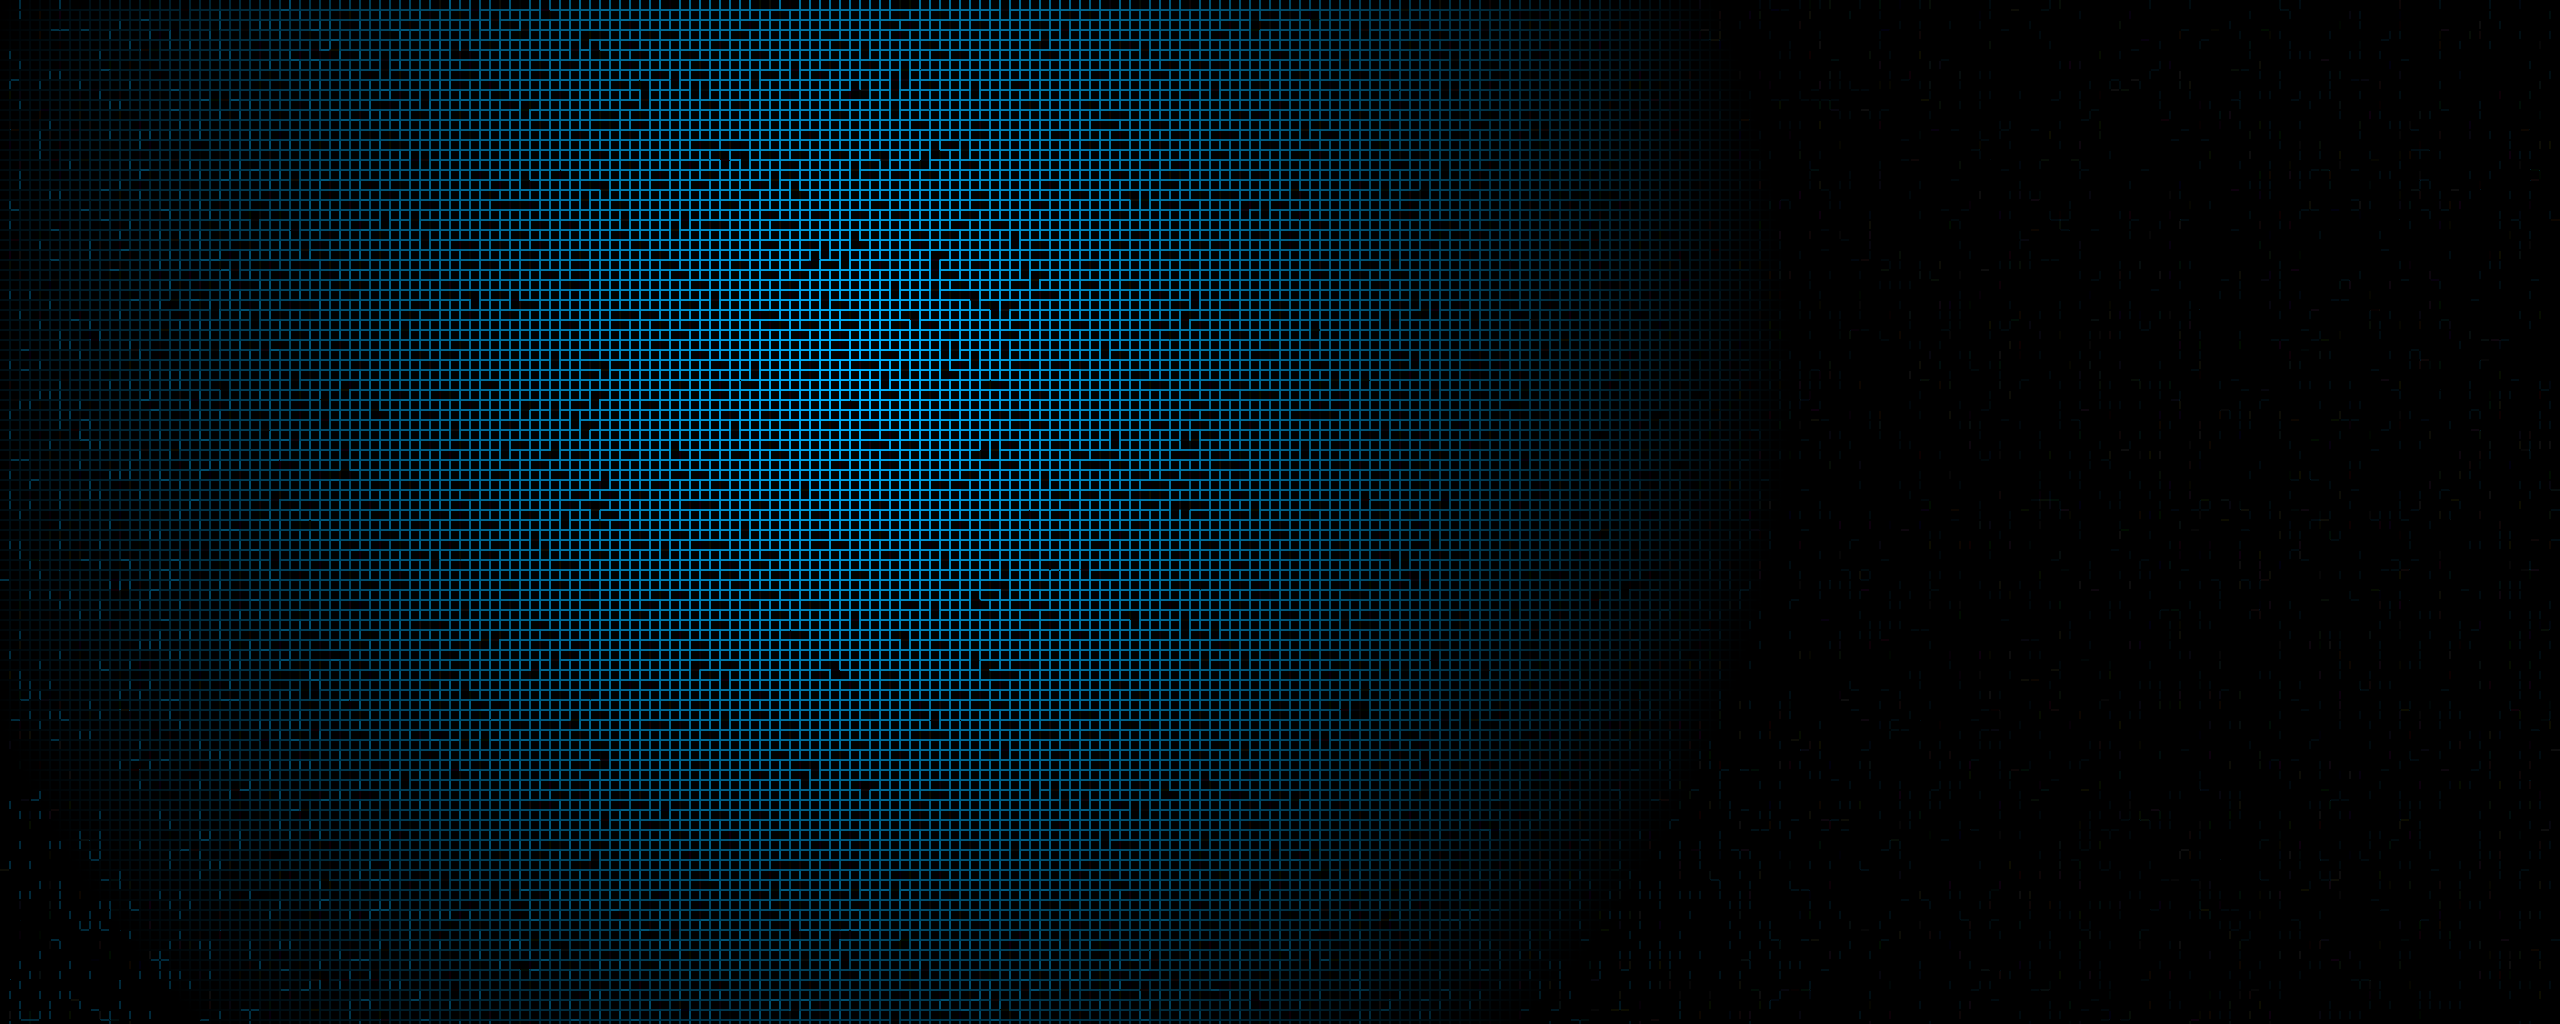 fond d'écran noir bleu hd,bleu,noir,modèle,texte,bleu électrique